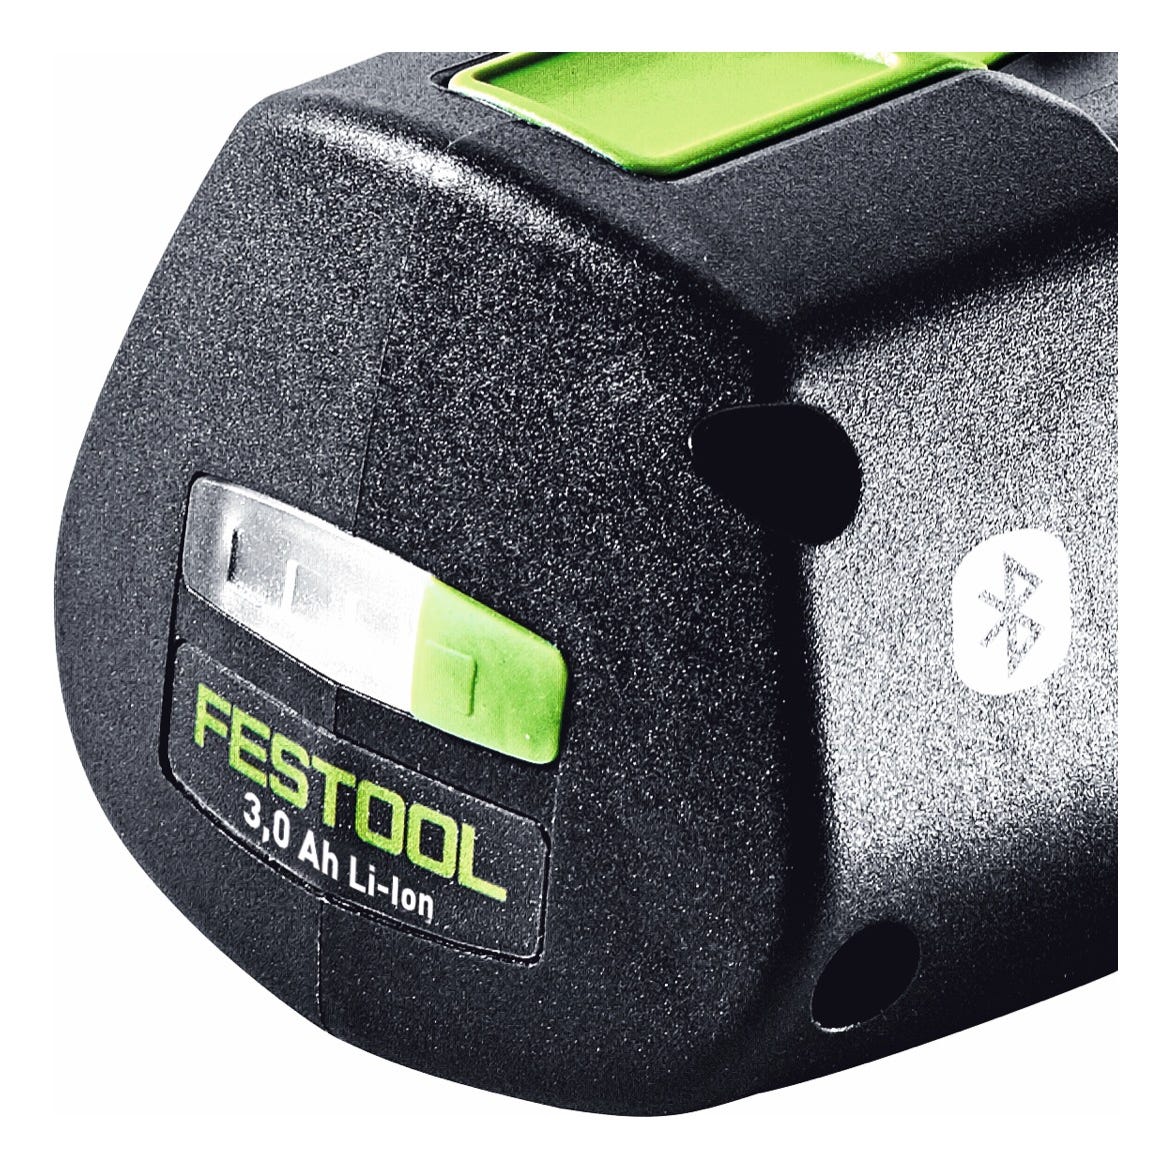 Festool Set de batteries BP 18 Li 3,0 Ergo I 3,0Ah / 3000mAh 18V Li-Ion avec indicateur de charge (2x 577704) 0